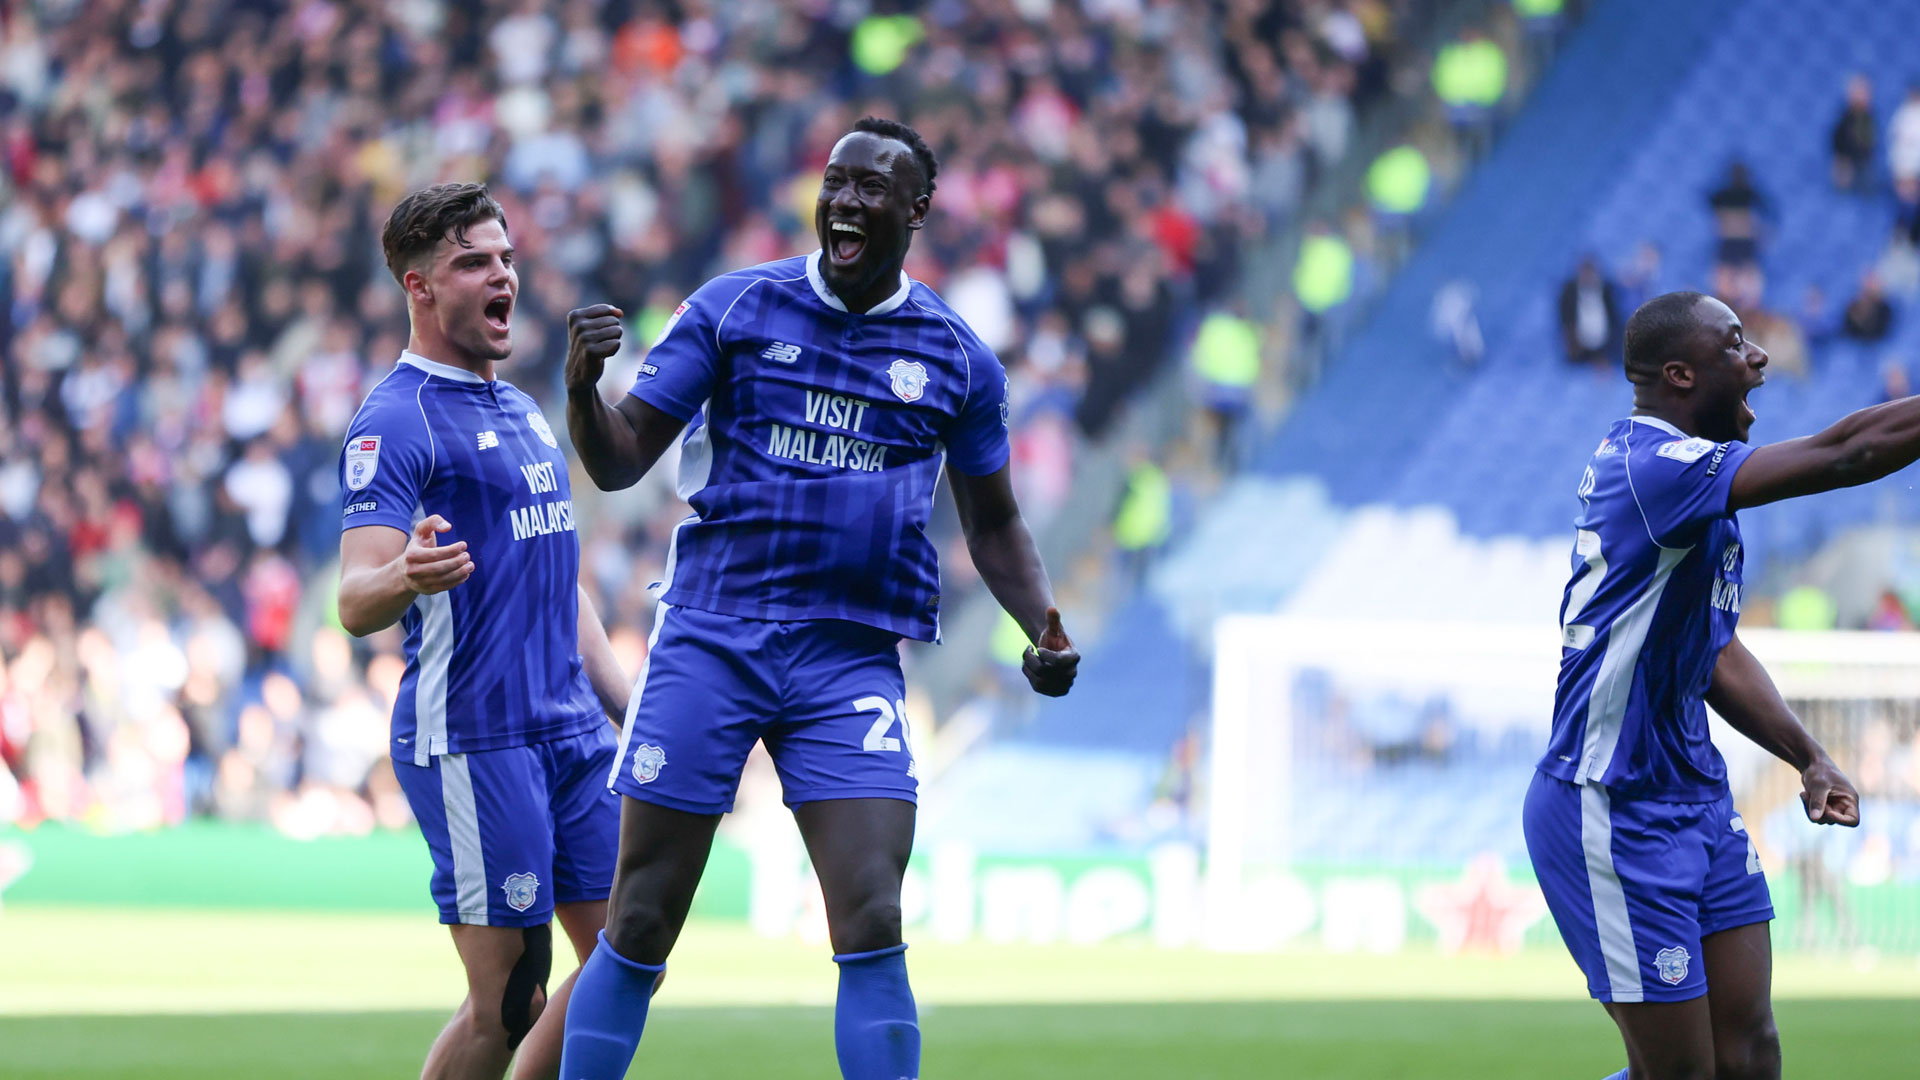 Famara Diédhiou scores for Cardiff City